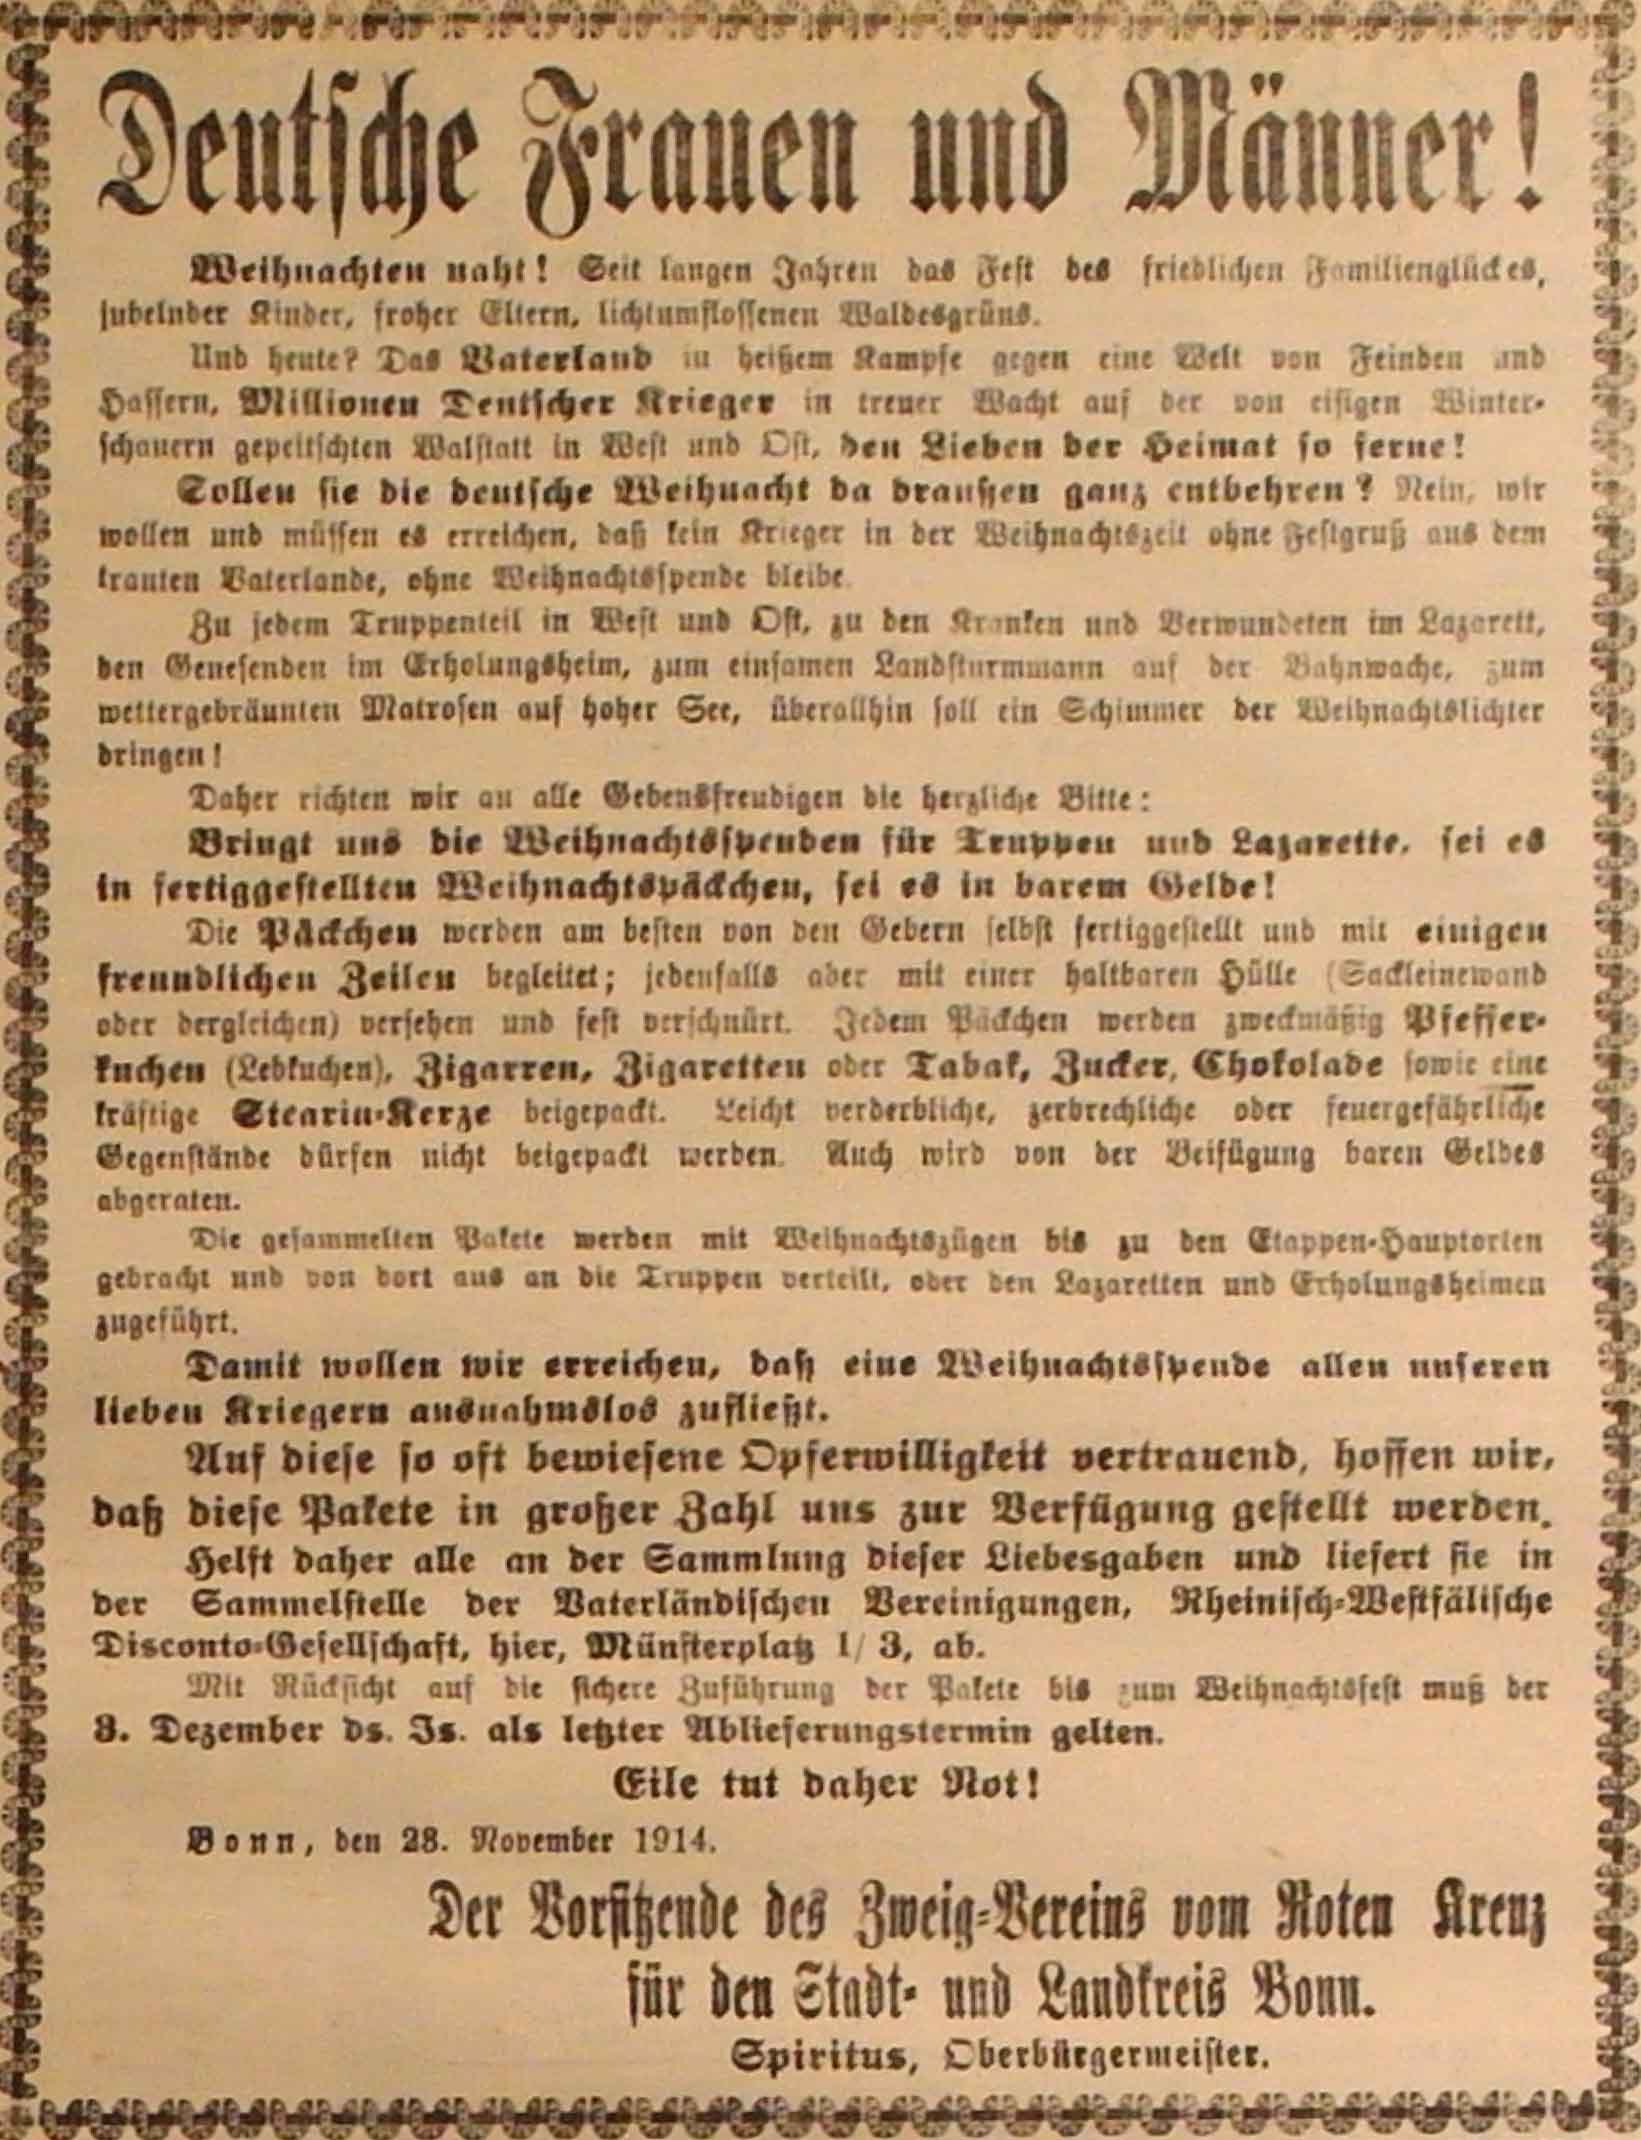 Anzeige in der Deutschen Reichs-Zeitung vom 24. November 1914